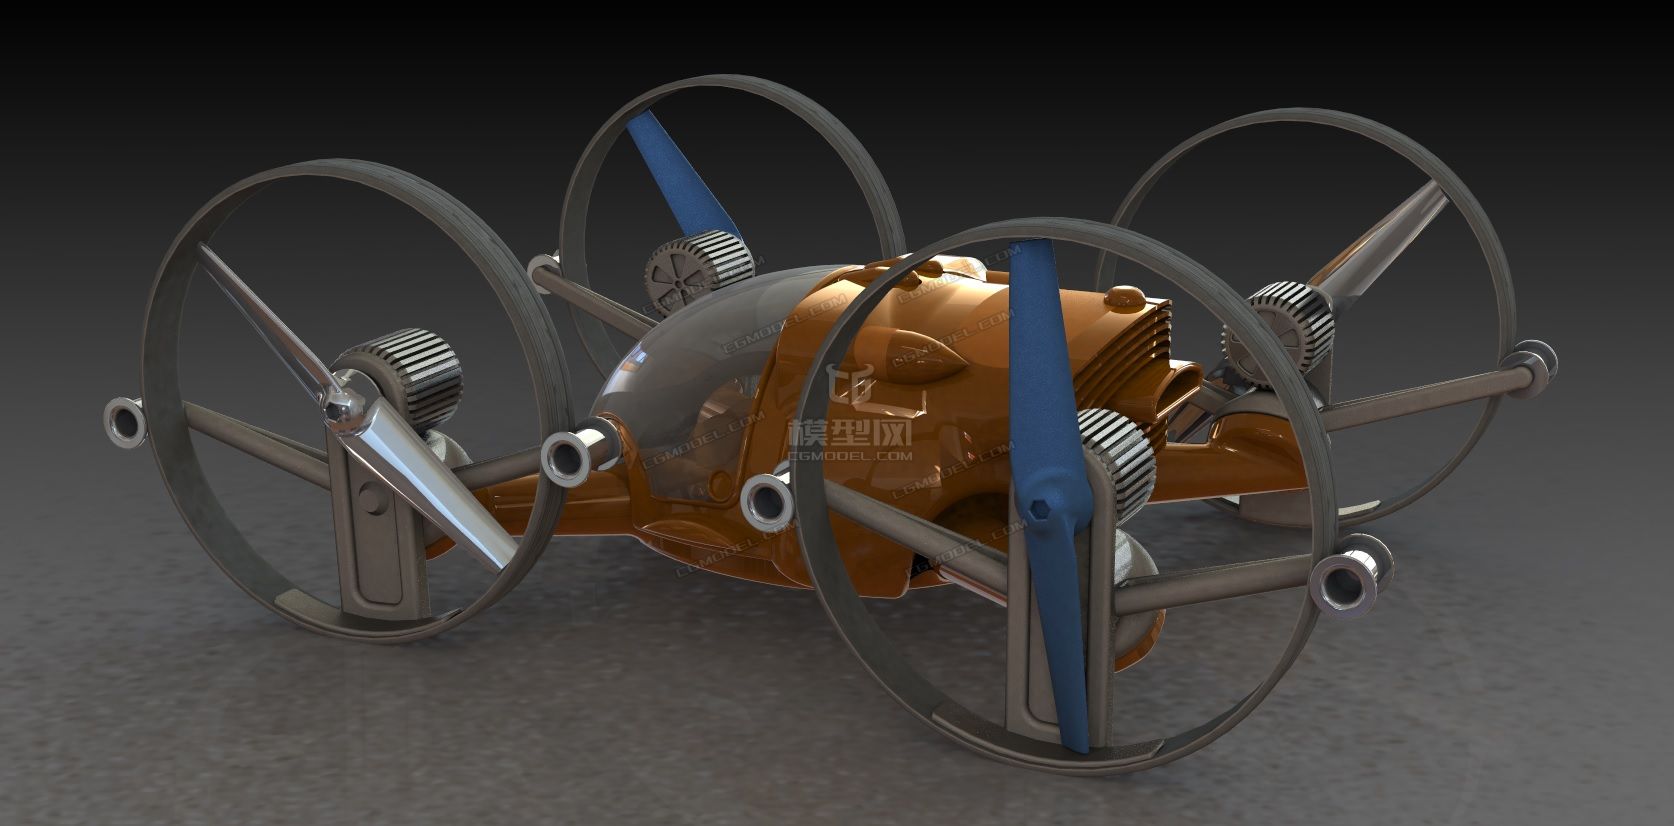 空陆两用载人四轴飞行器概念设计建模图纸